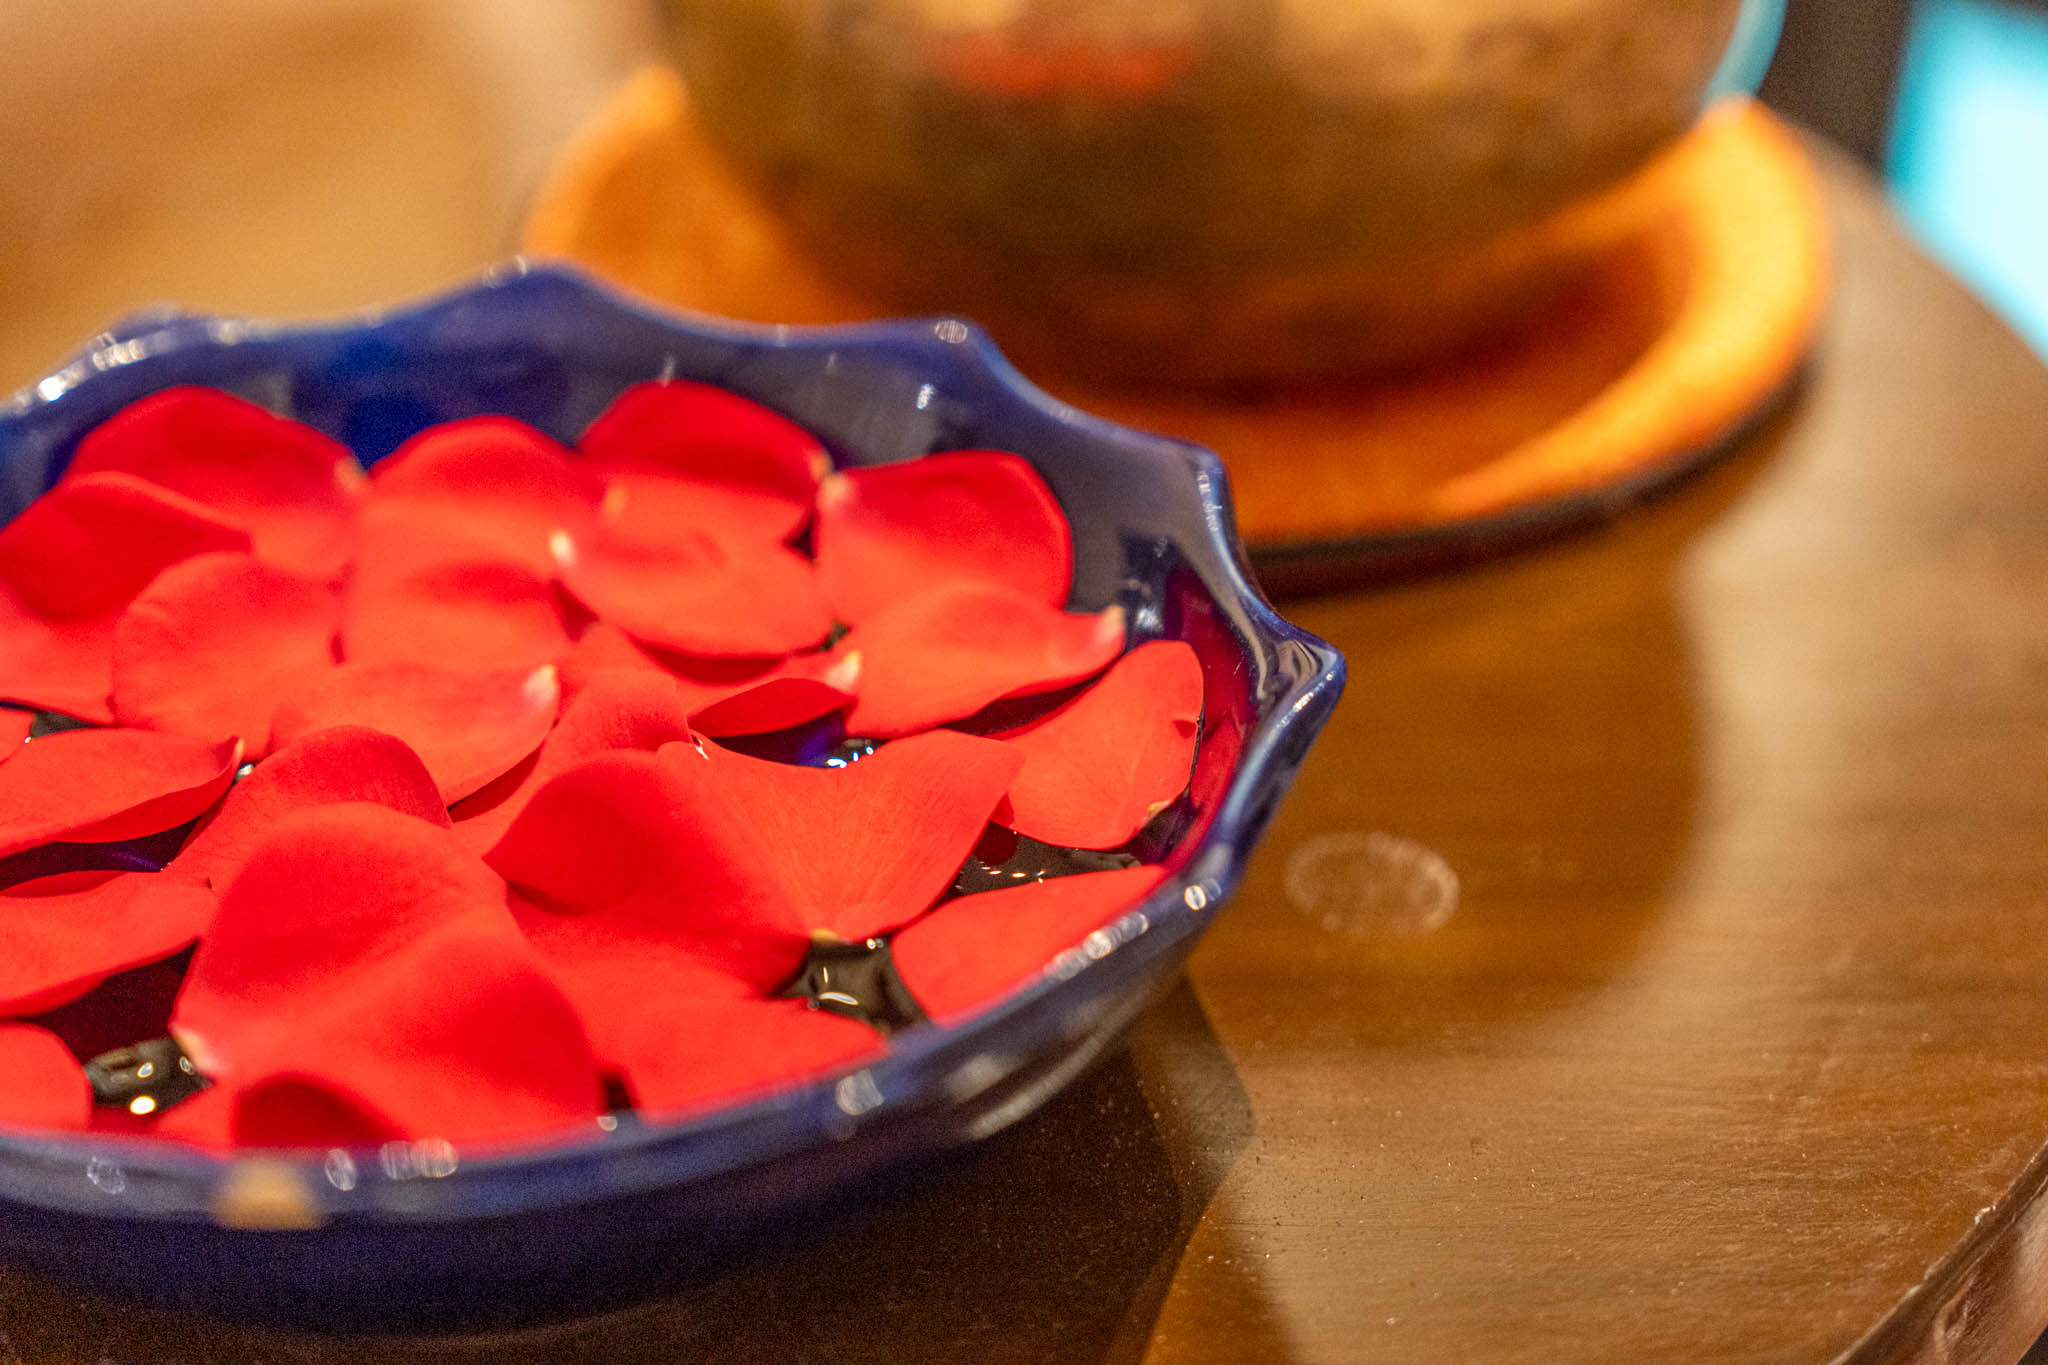 a bowl of red petals